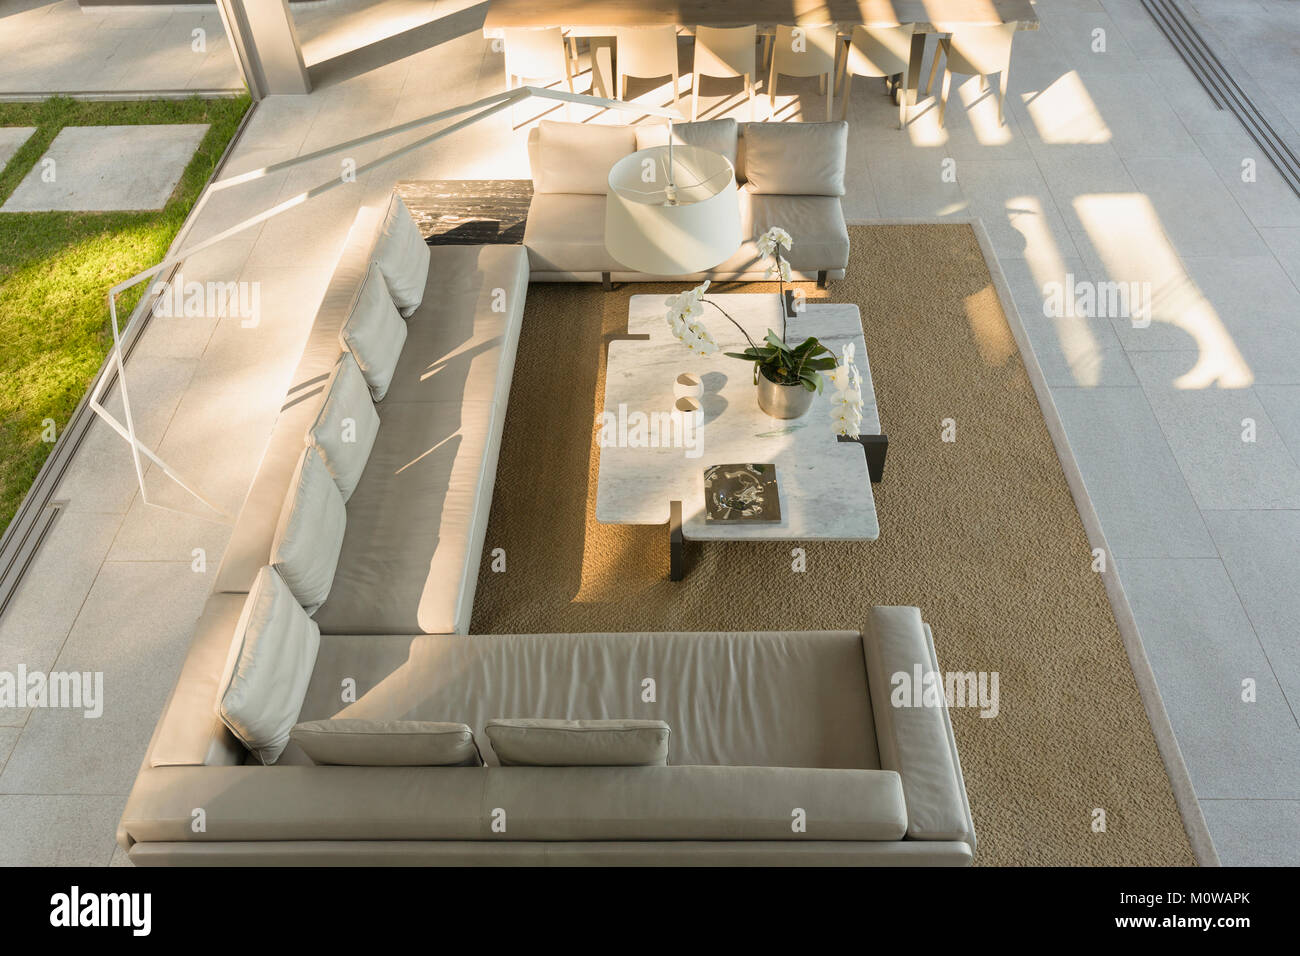 Erhöhte Ansicht sofagarnitur in modernen, luxuriösen Home Showcase interior Wohnzimmer Stockfoto